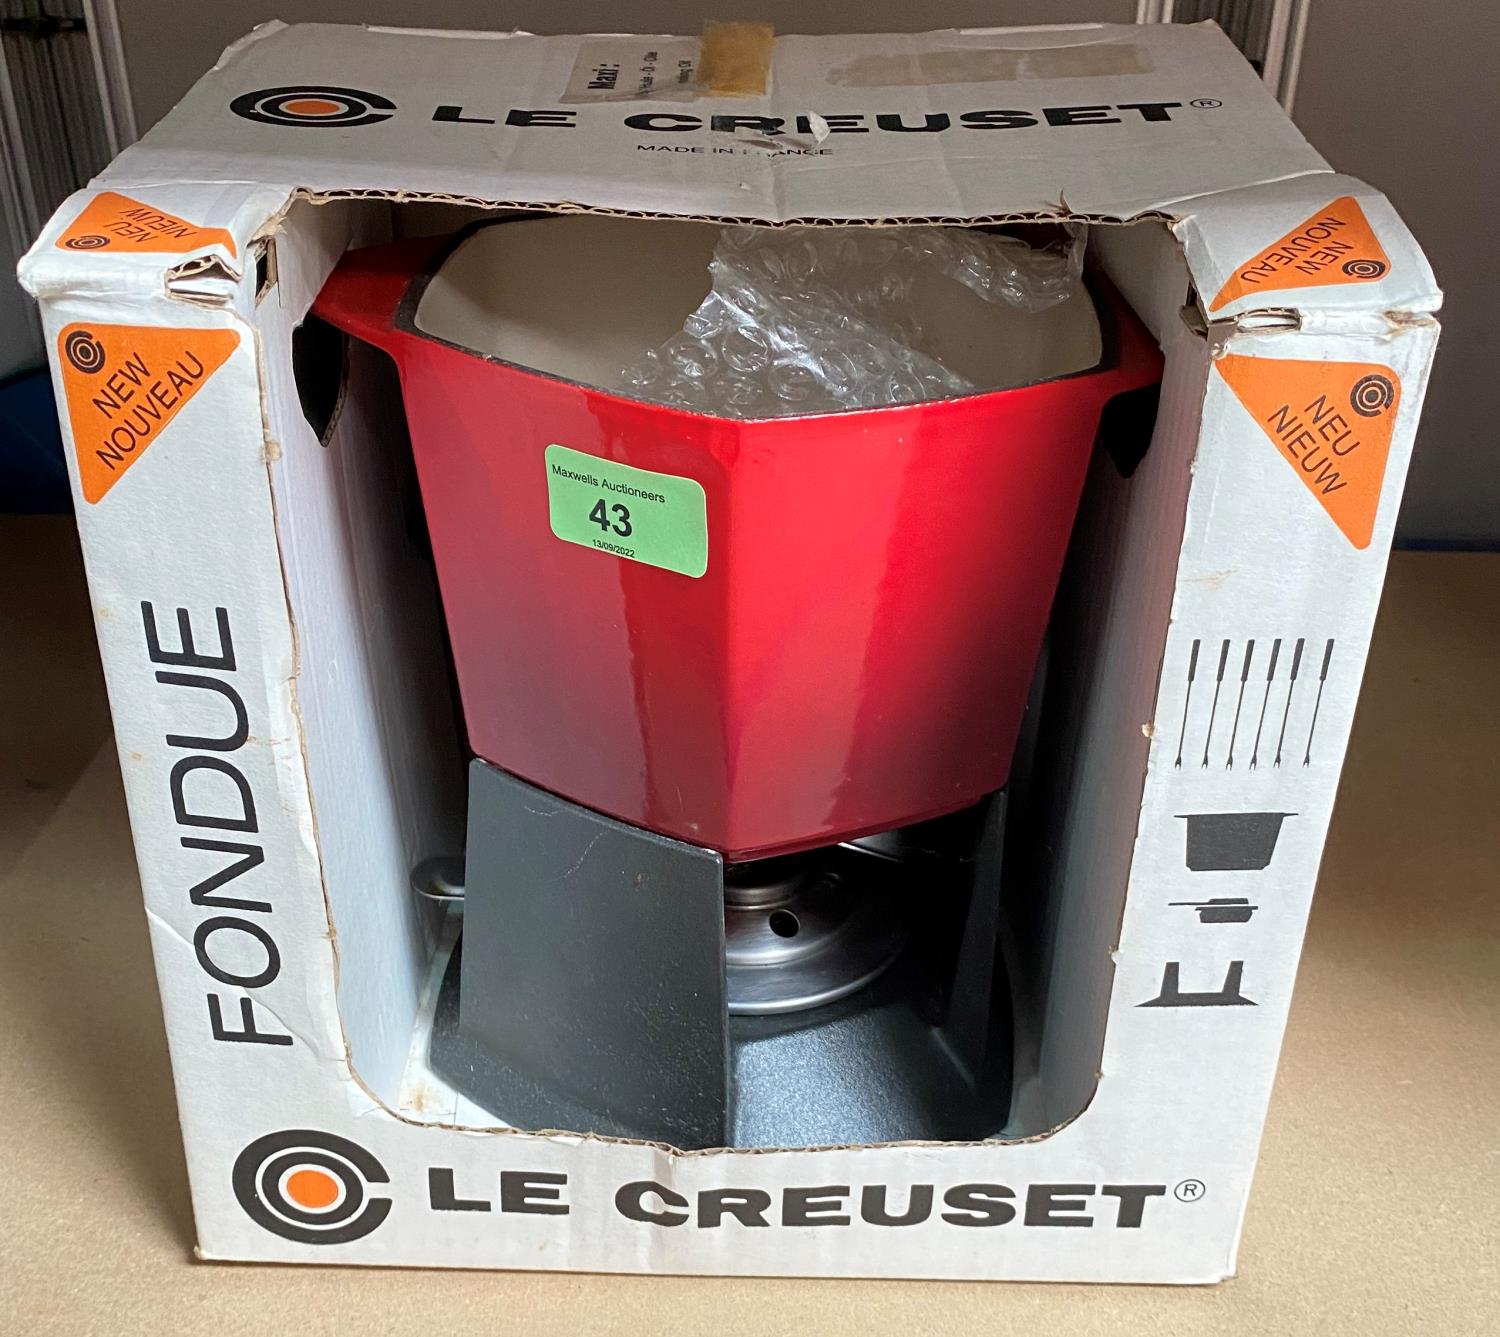 A boxed Le Creuset fondue set